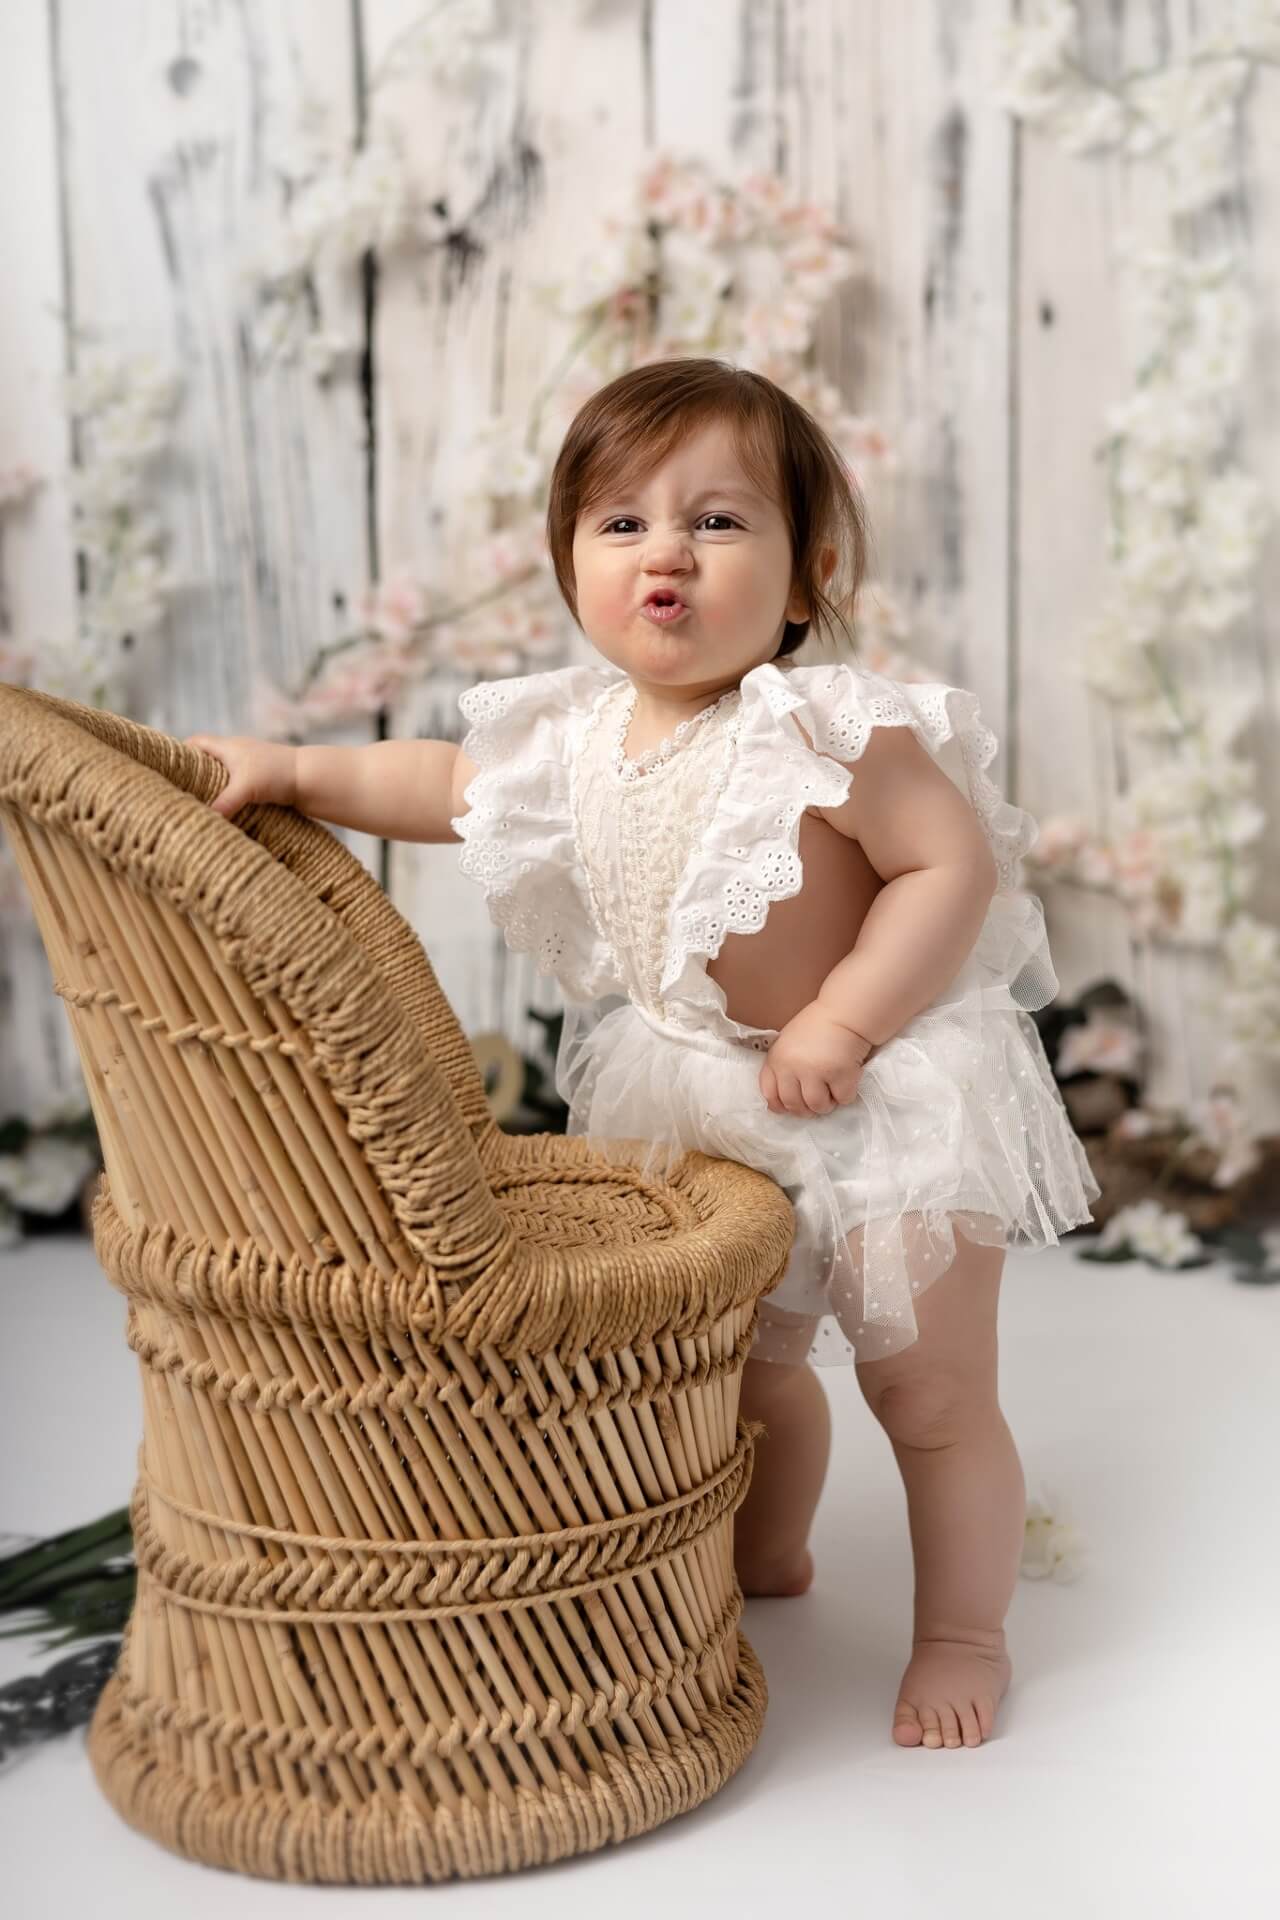 Une petite fille vêtue d’une barboteuse blanche pose devant une chaise en osier.